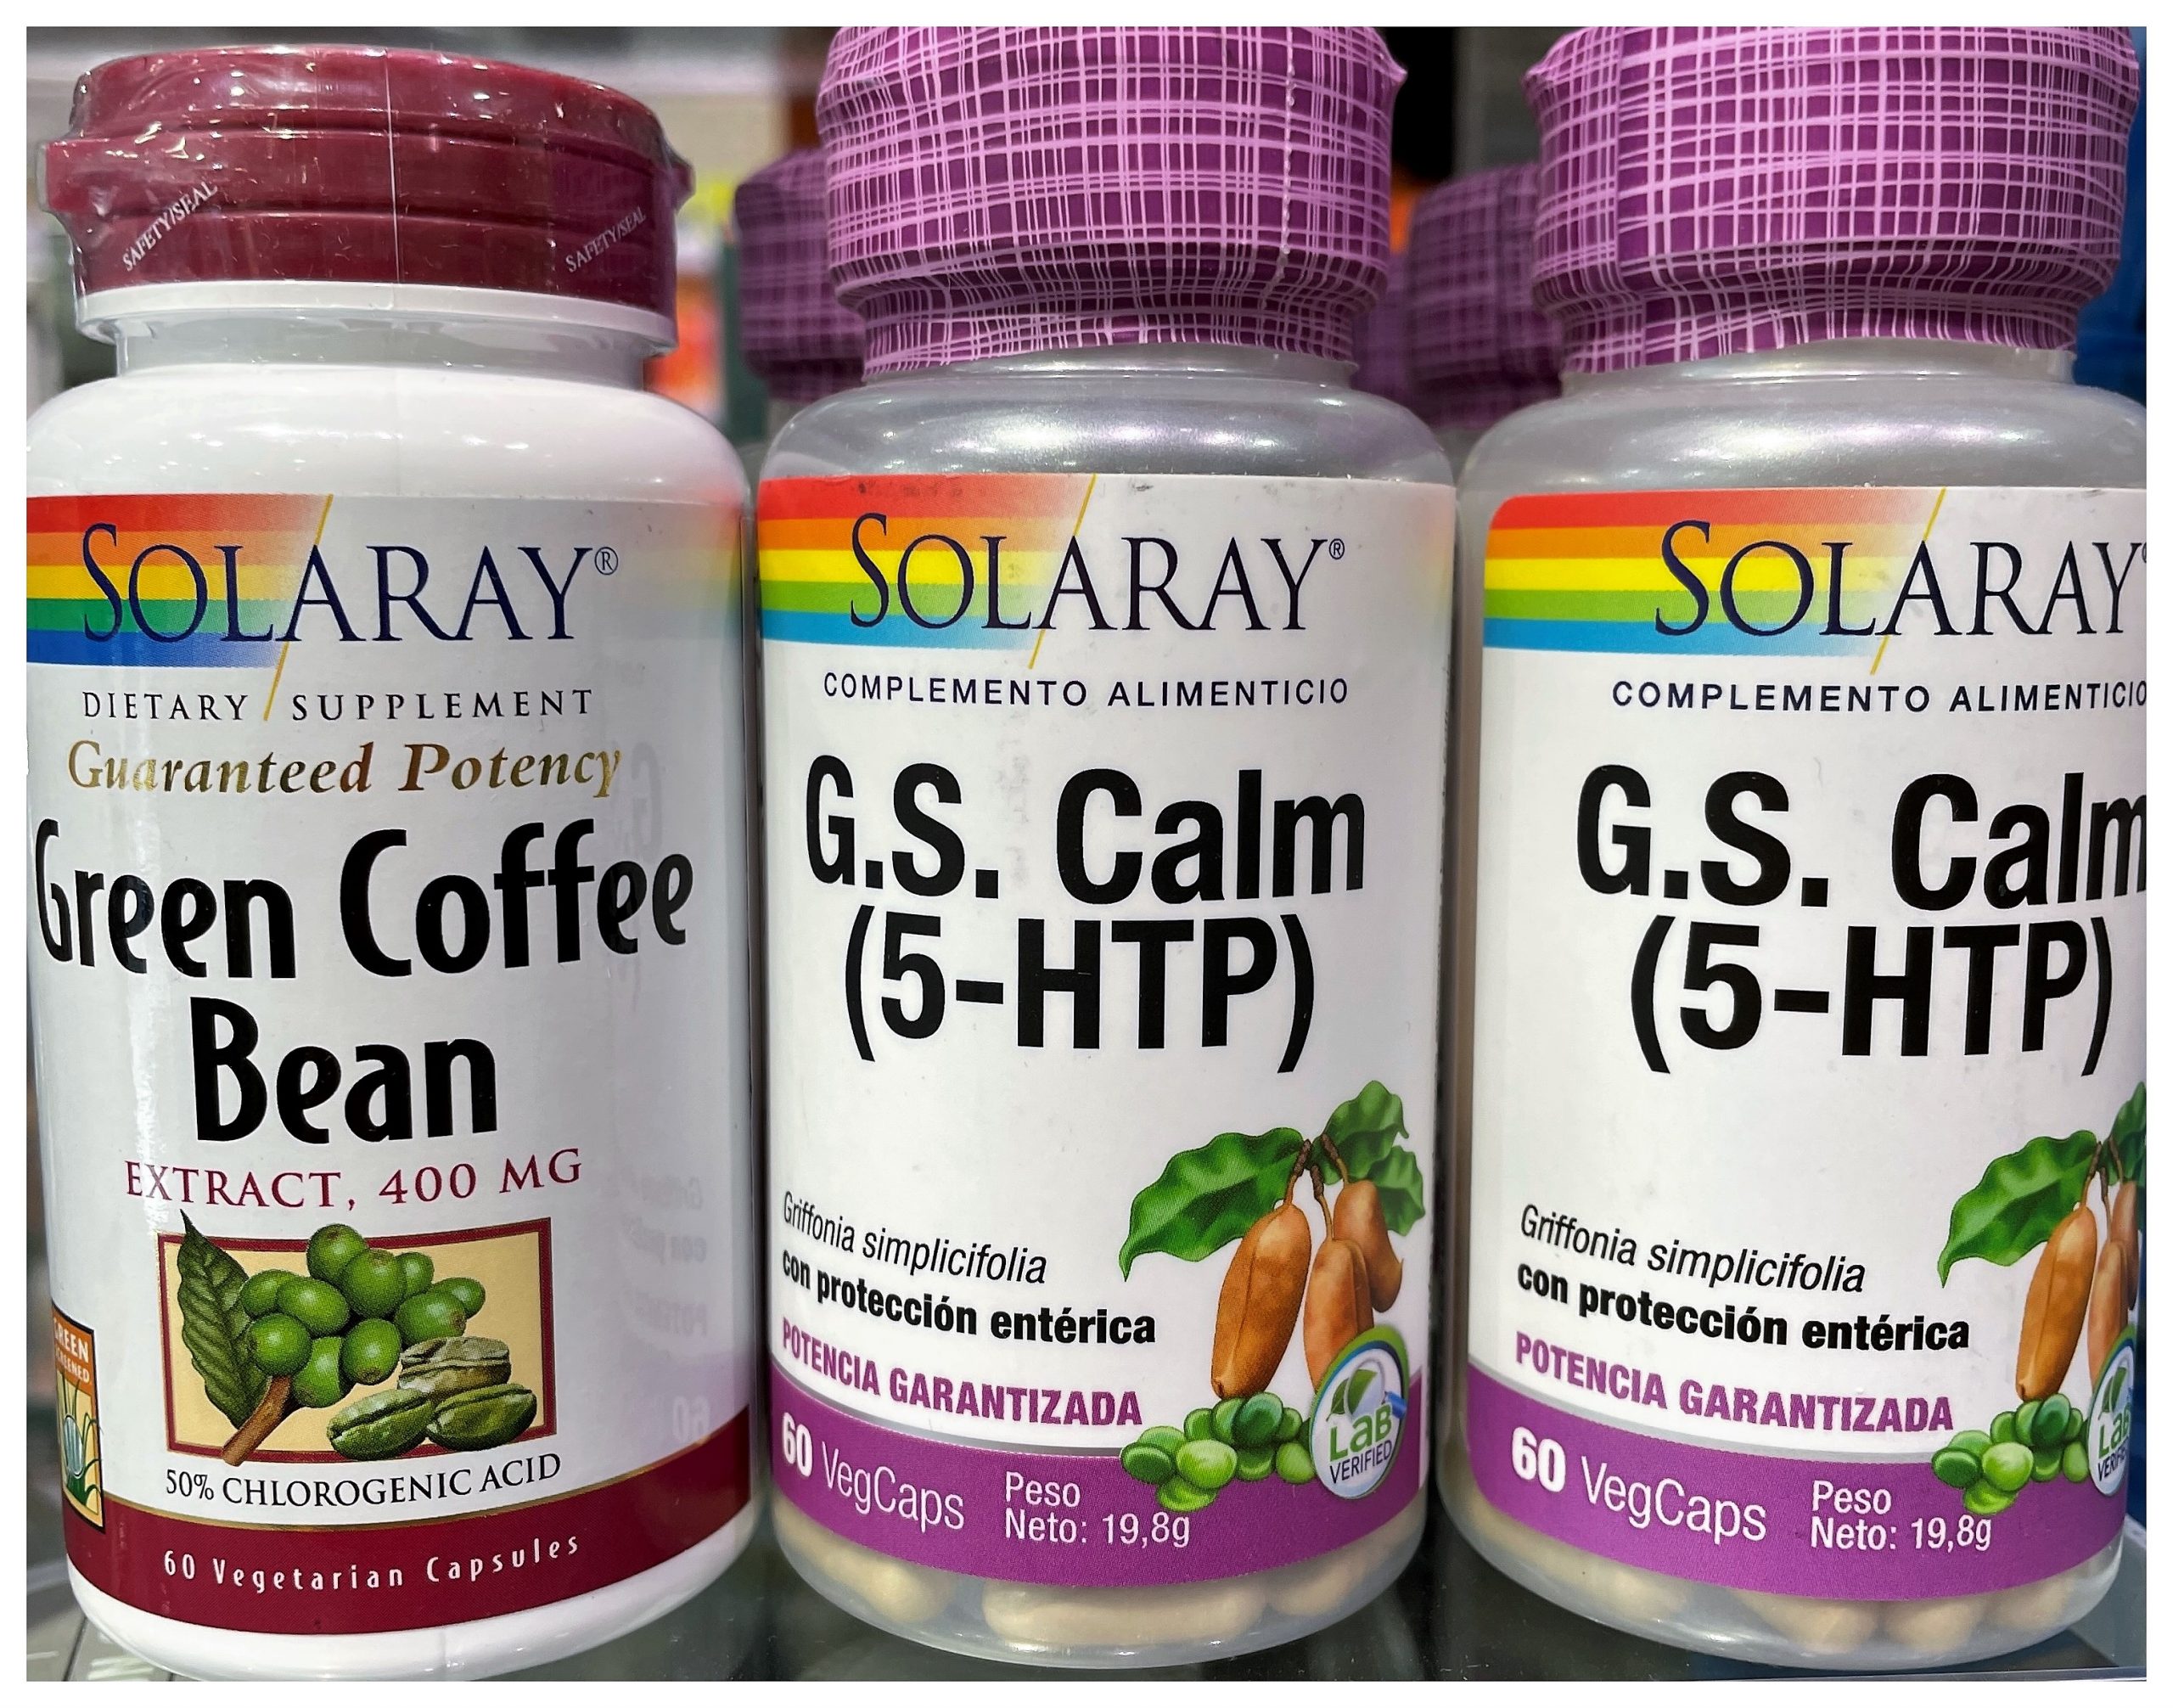 Green Coffee Bean Extract de Solaray es un complemento alimenticio que ayuda en la pérdida de peso gracias a su efecto quemagrasas.